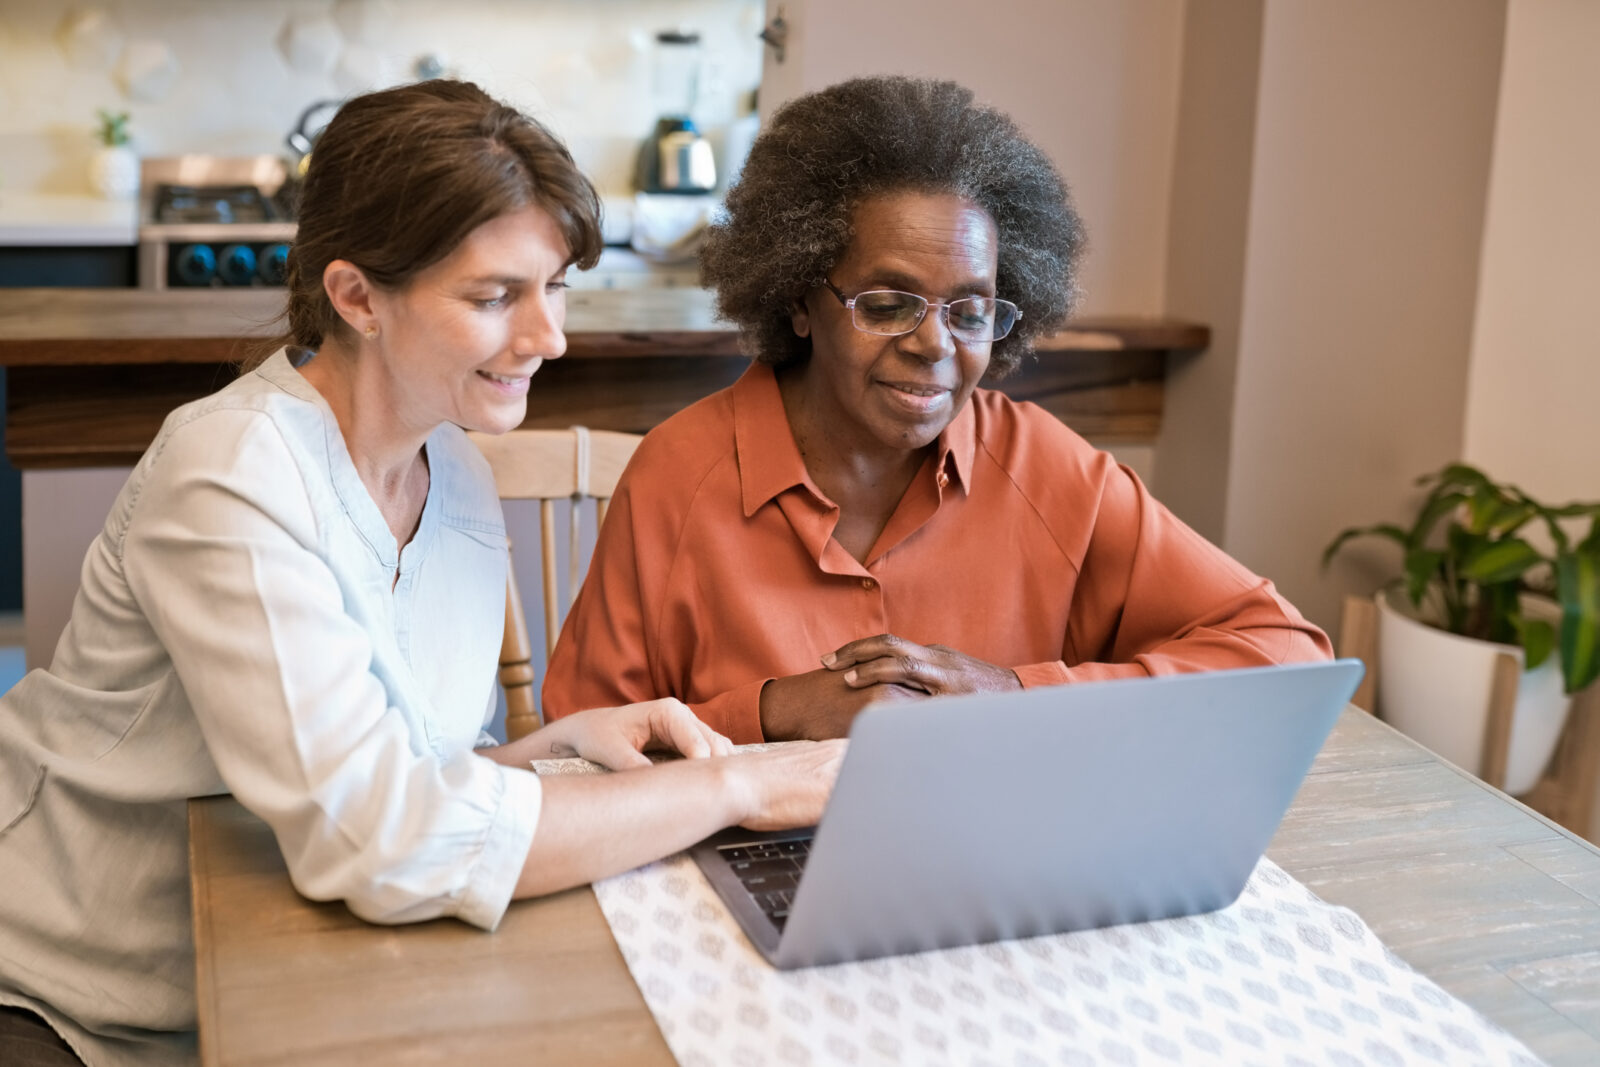 Smiling caregiver teaching laptop skills to senior woman.